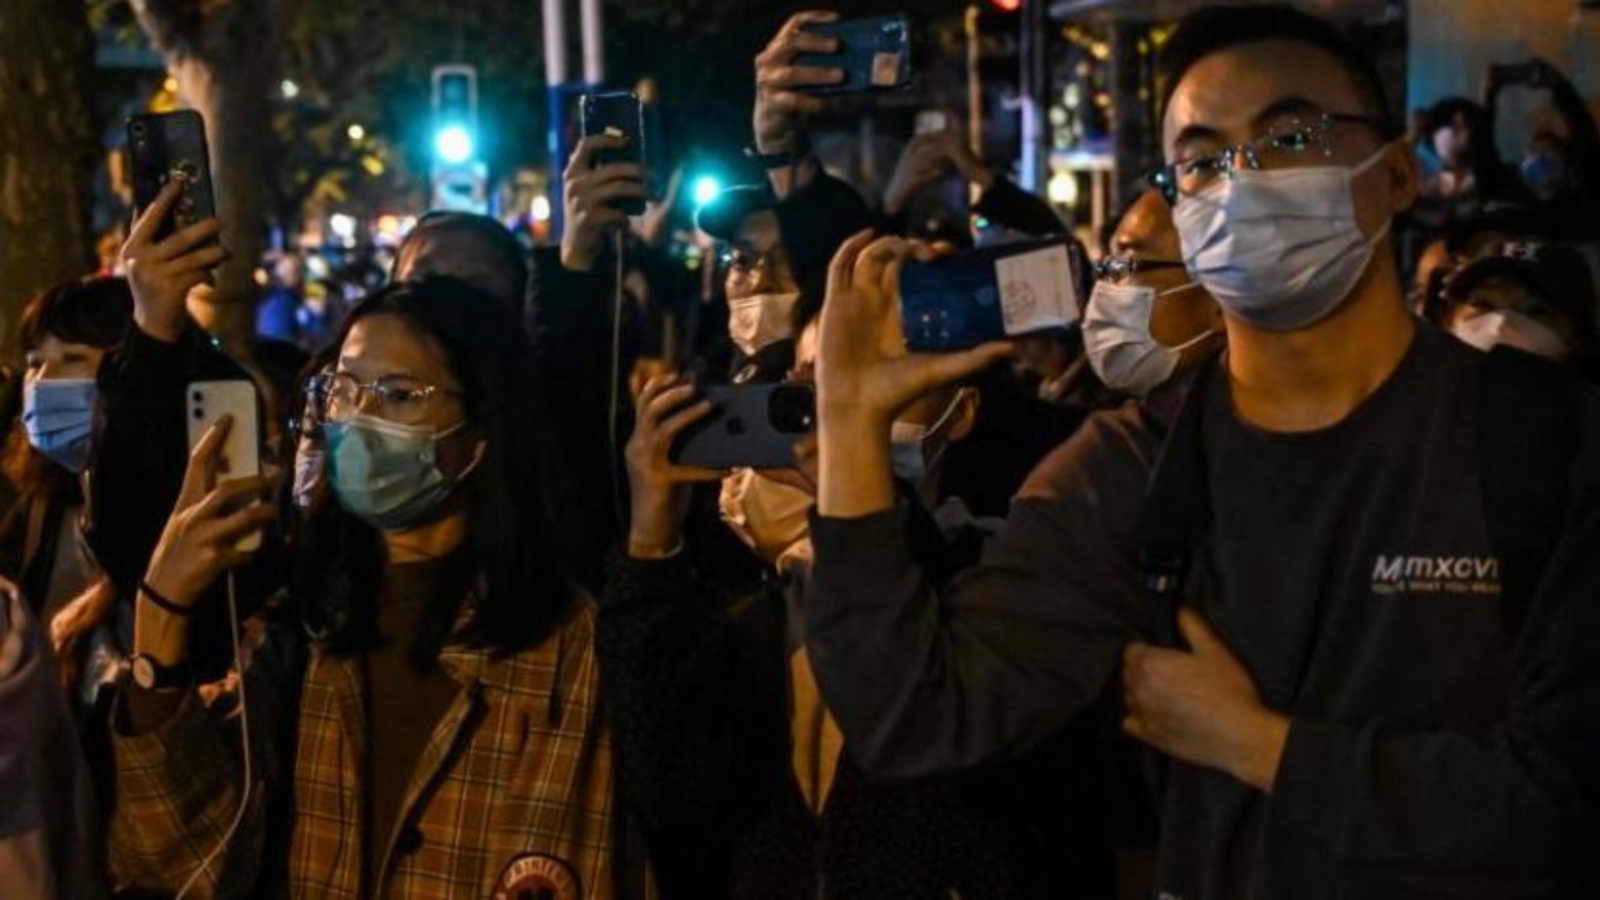 متظاهرون يسيرون في شارع خلال مسيرة لضحايا حريق مميت وكذلك احتجاجاً على قيود الصين القاسية لكورونا في بكين